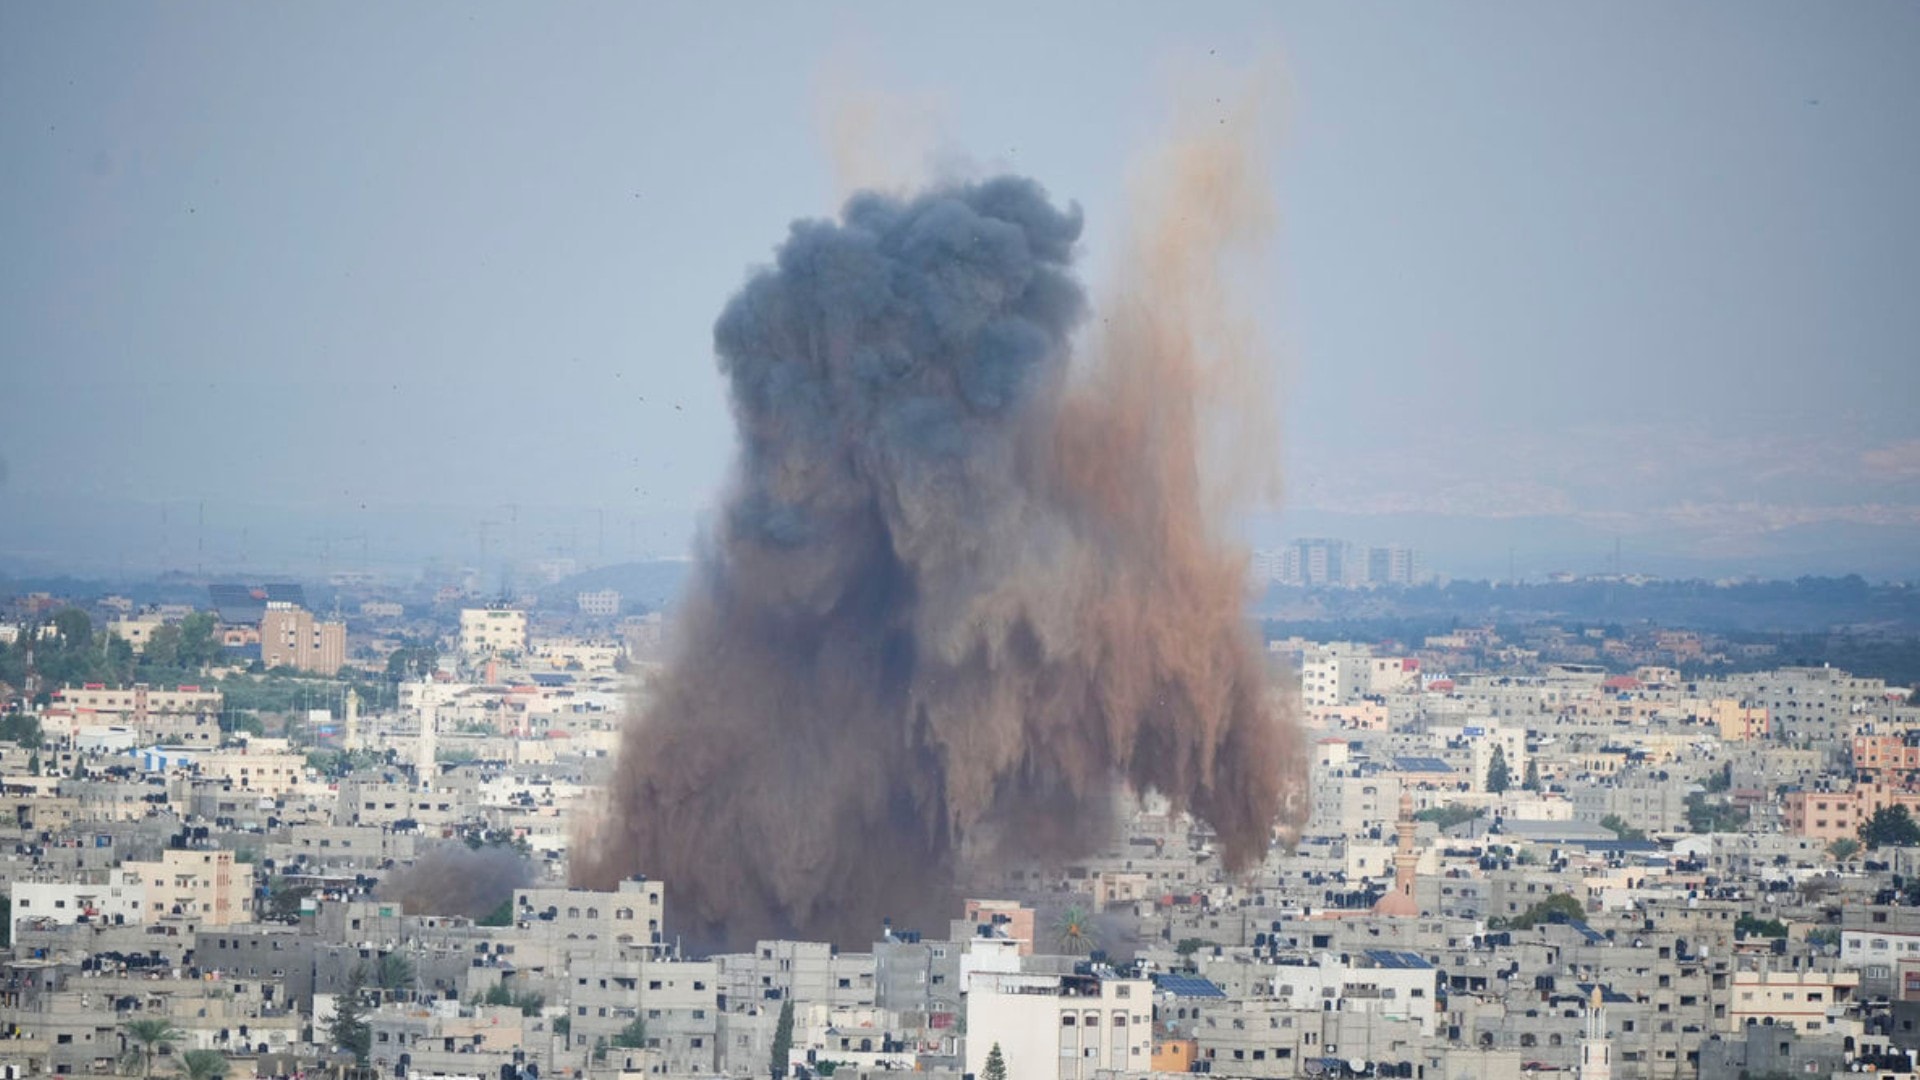 Dym z výbuchu spôsobeného izraelským náletom v pásme Gazy